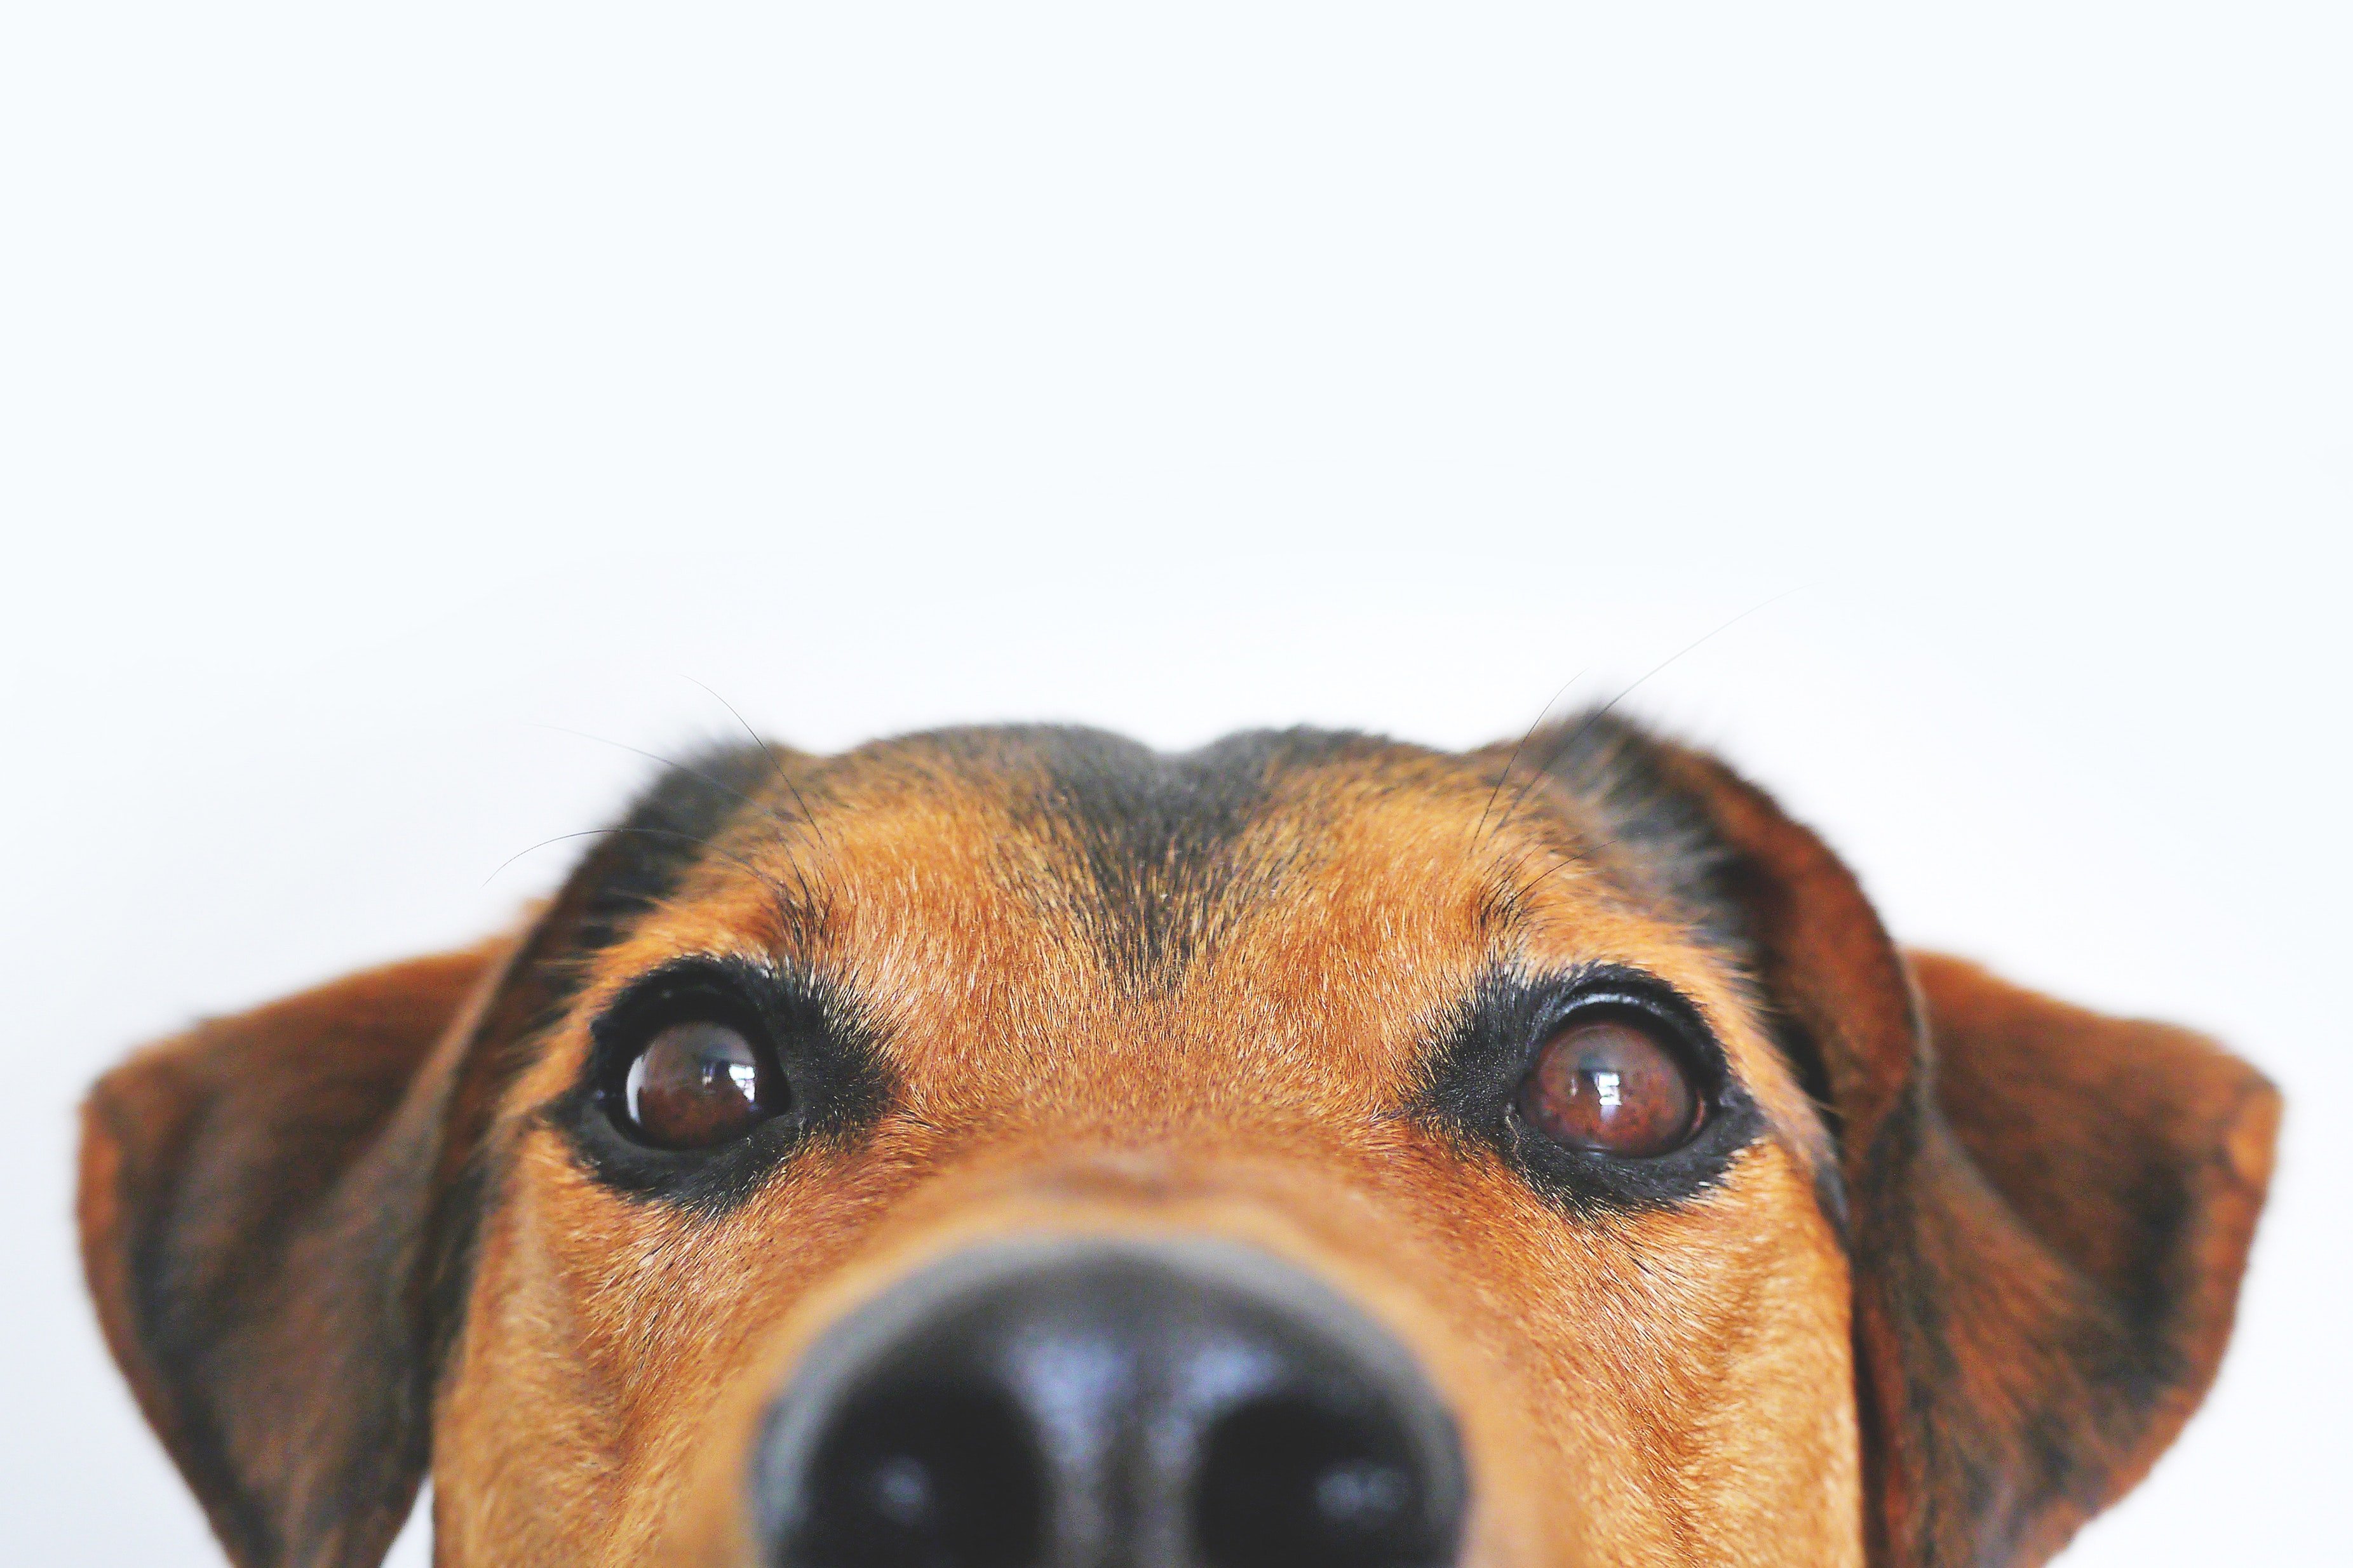 A peeking dog. | Source: Pexels